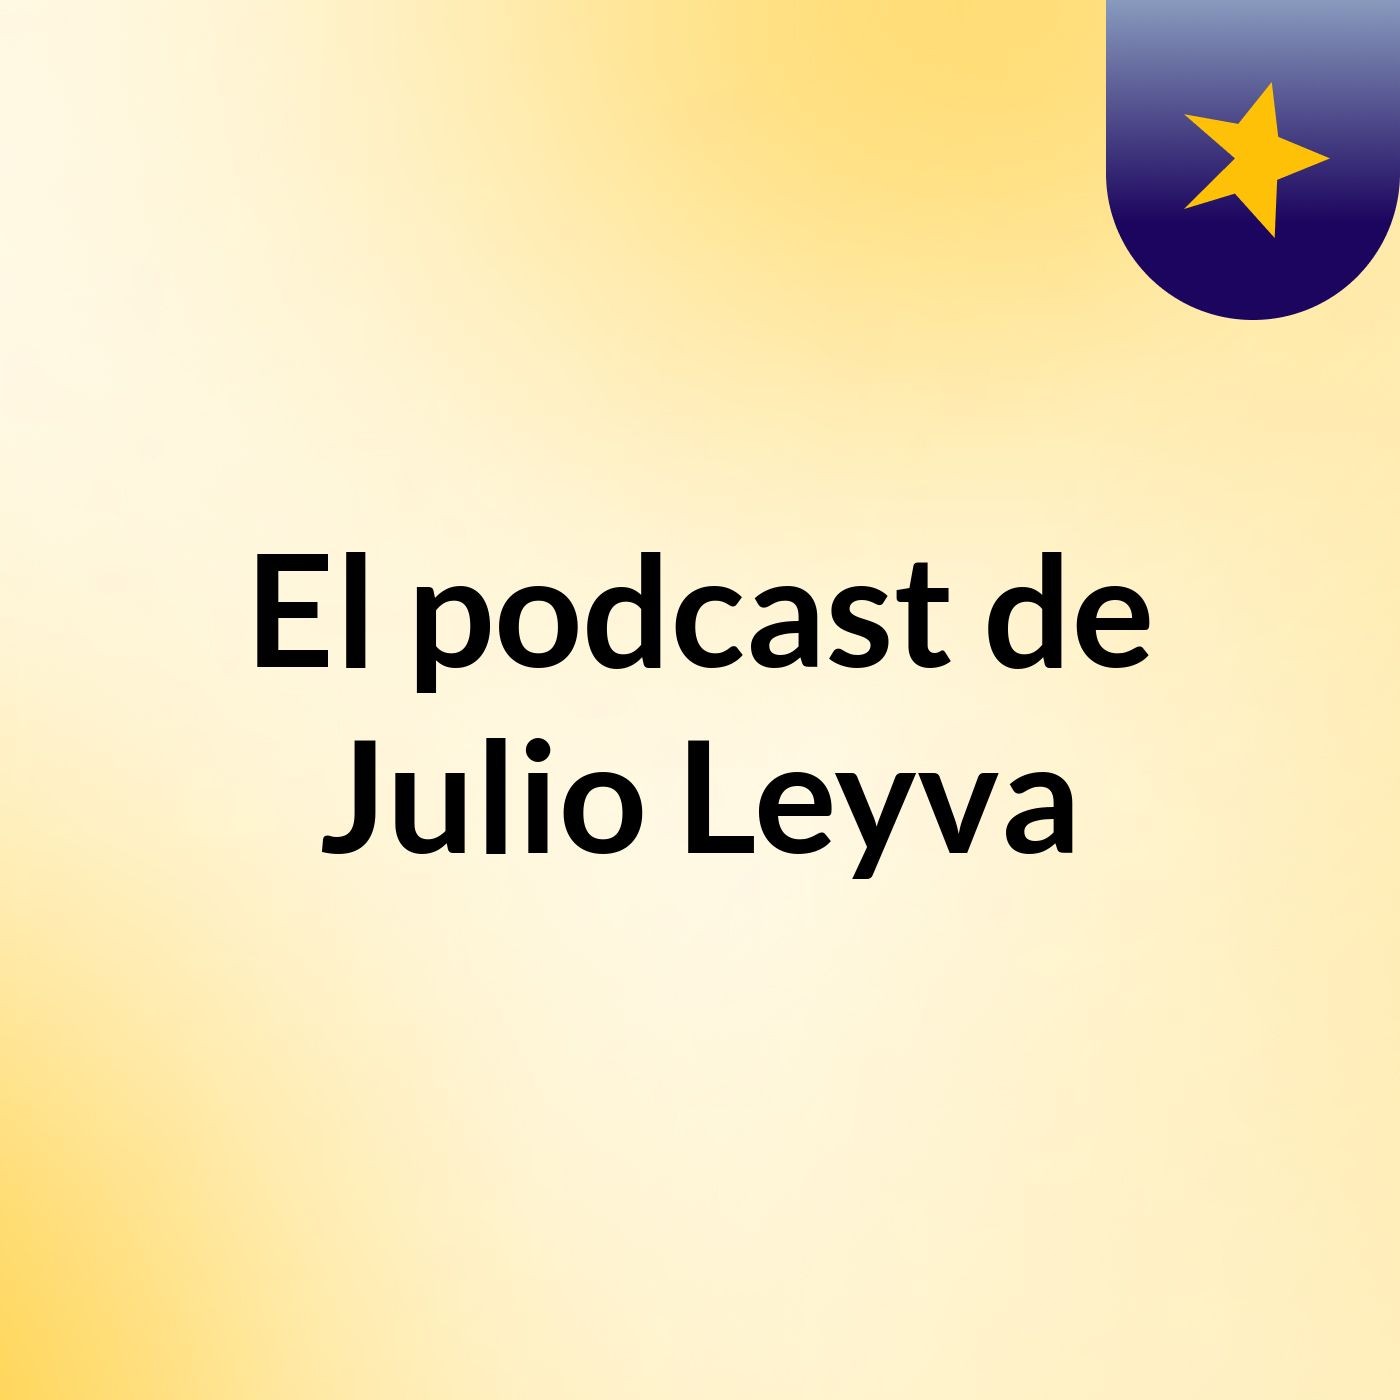 El podcast de Julio Leyva